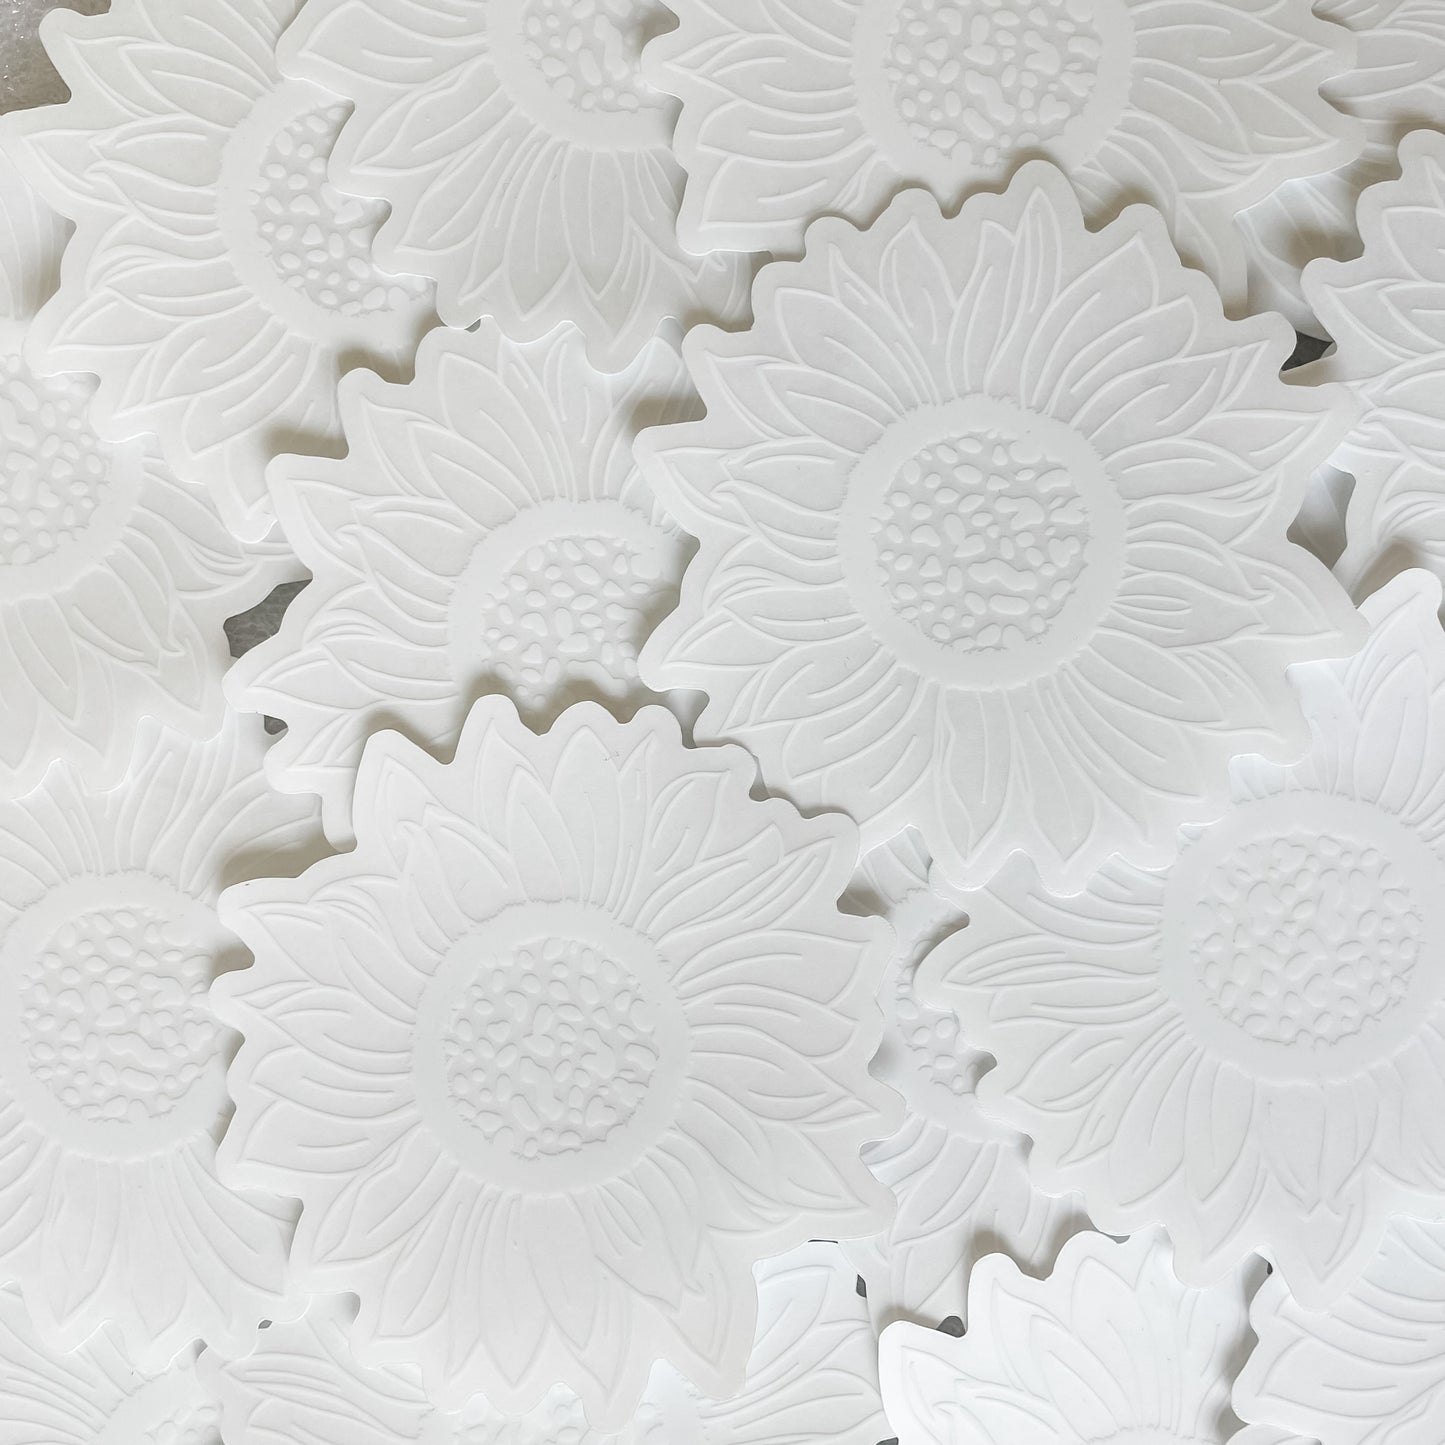 CLEAR White Sunflower Waterproof Vinyl Sticker